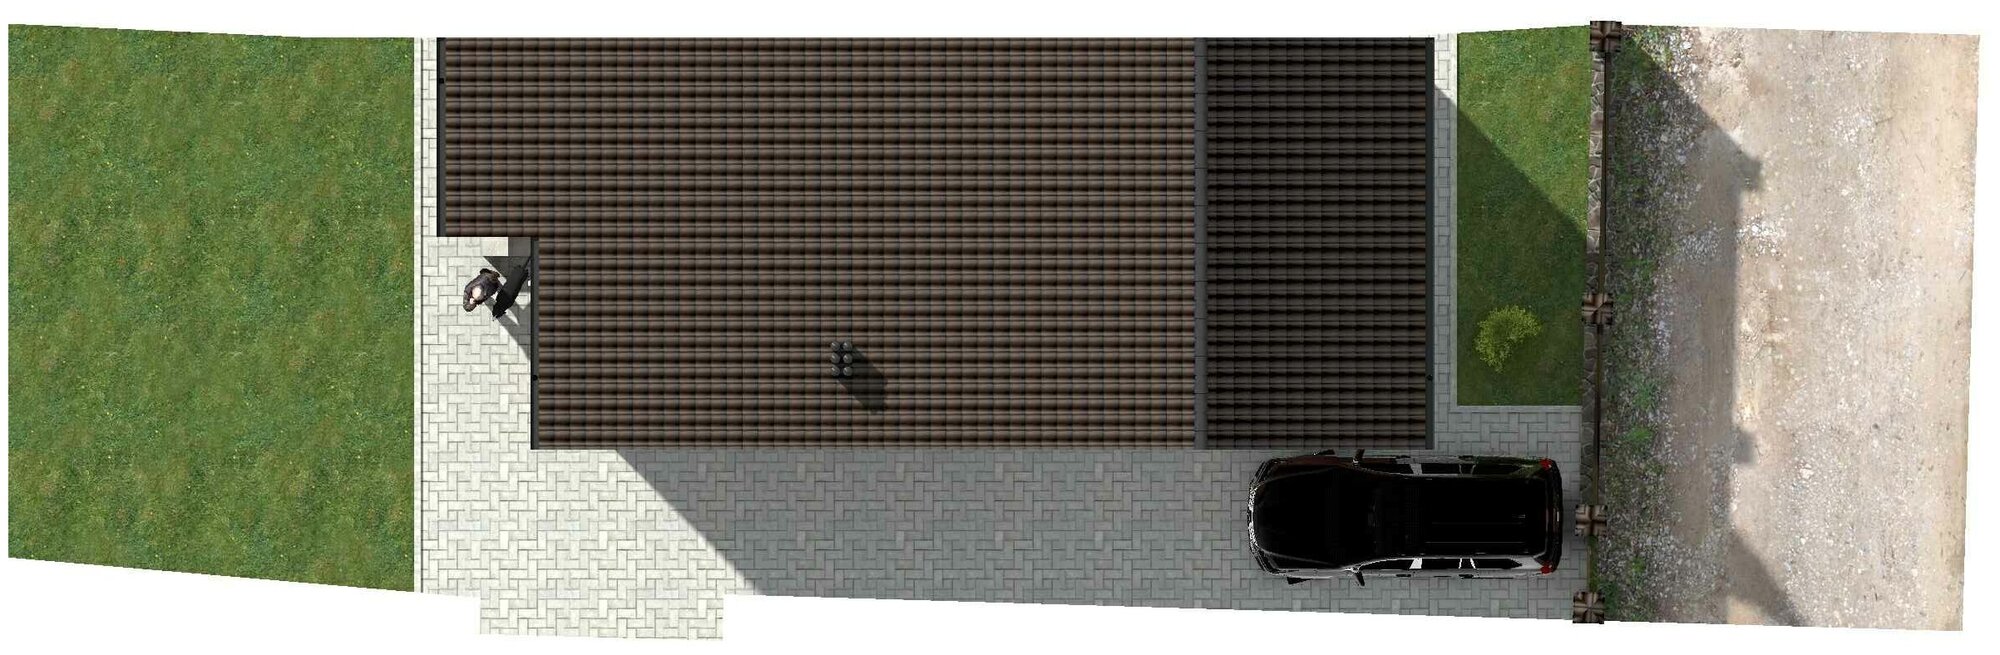 Готовый проект одноэтажного дома без гаража из газобетонного блока с облицовкой из керамического облицовочного кирпича площадью 55,9 кв.м - фотография № 7